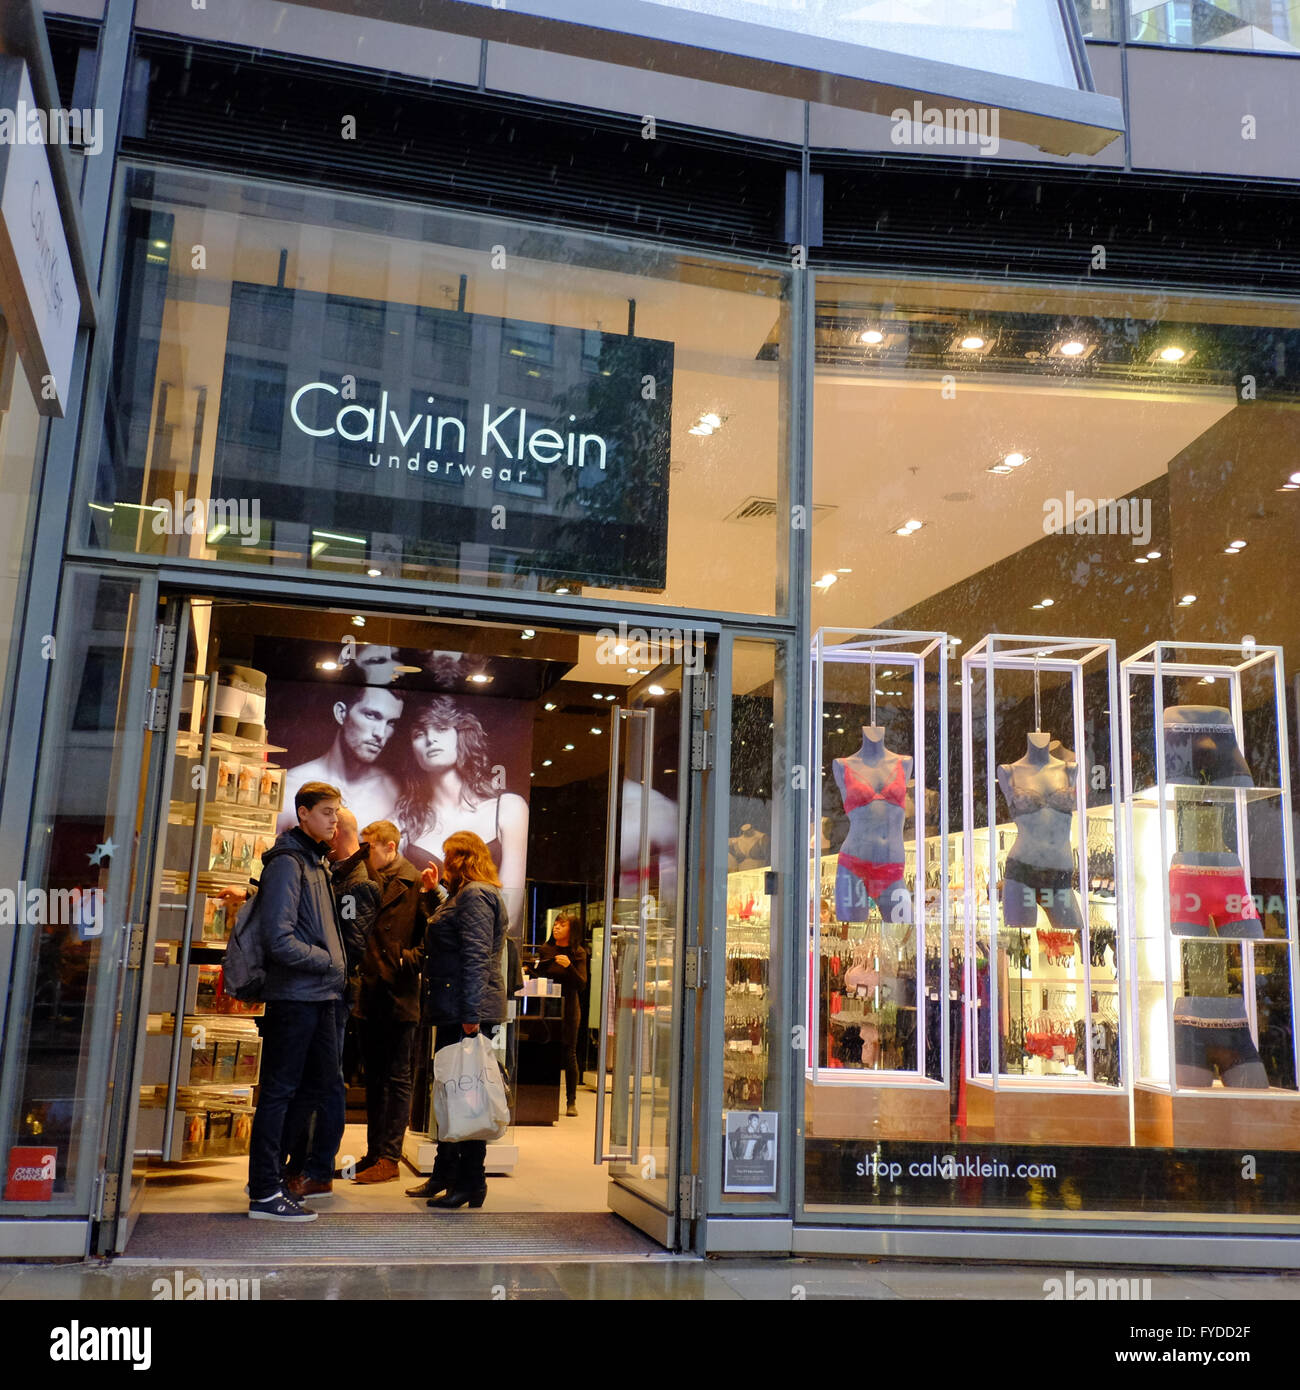 Calvin Klein Underwear speichern in London mit Menschen in Tür  Stockfotografie - Alamy